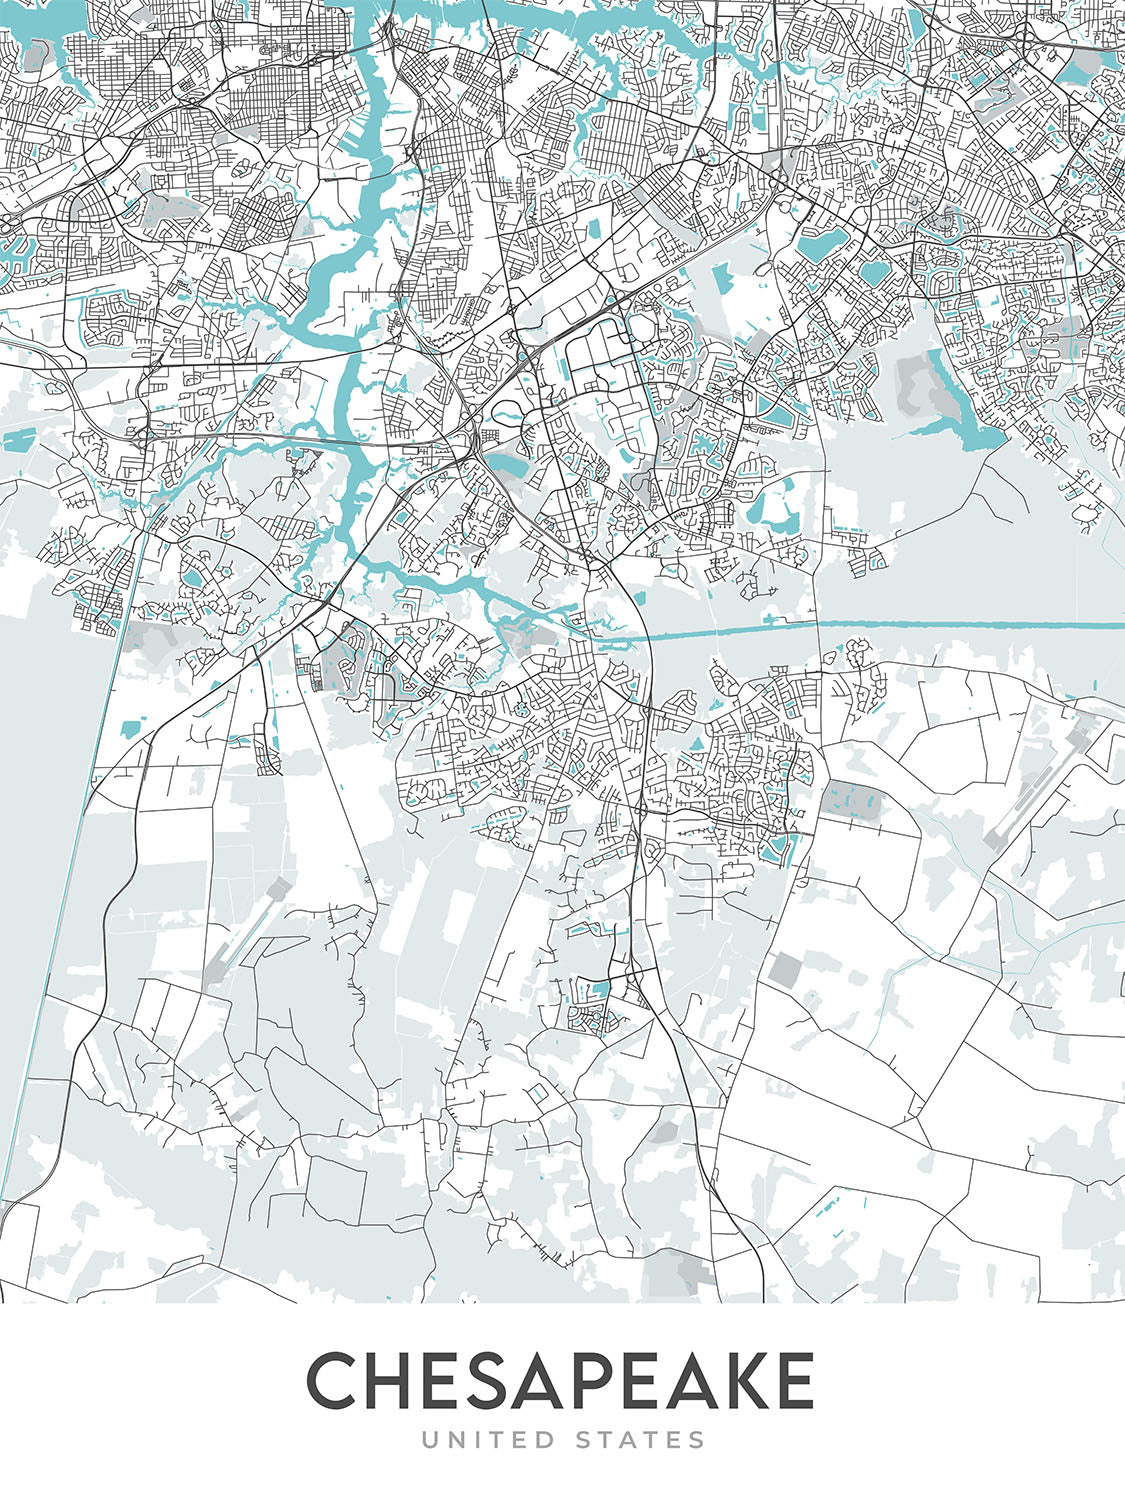 Moderner Stadtplan von Chesapeake, VA: Chesapeake Bay, Norfolk, Virginia Beach, Great Dismal Swamp, I-64